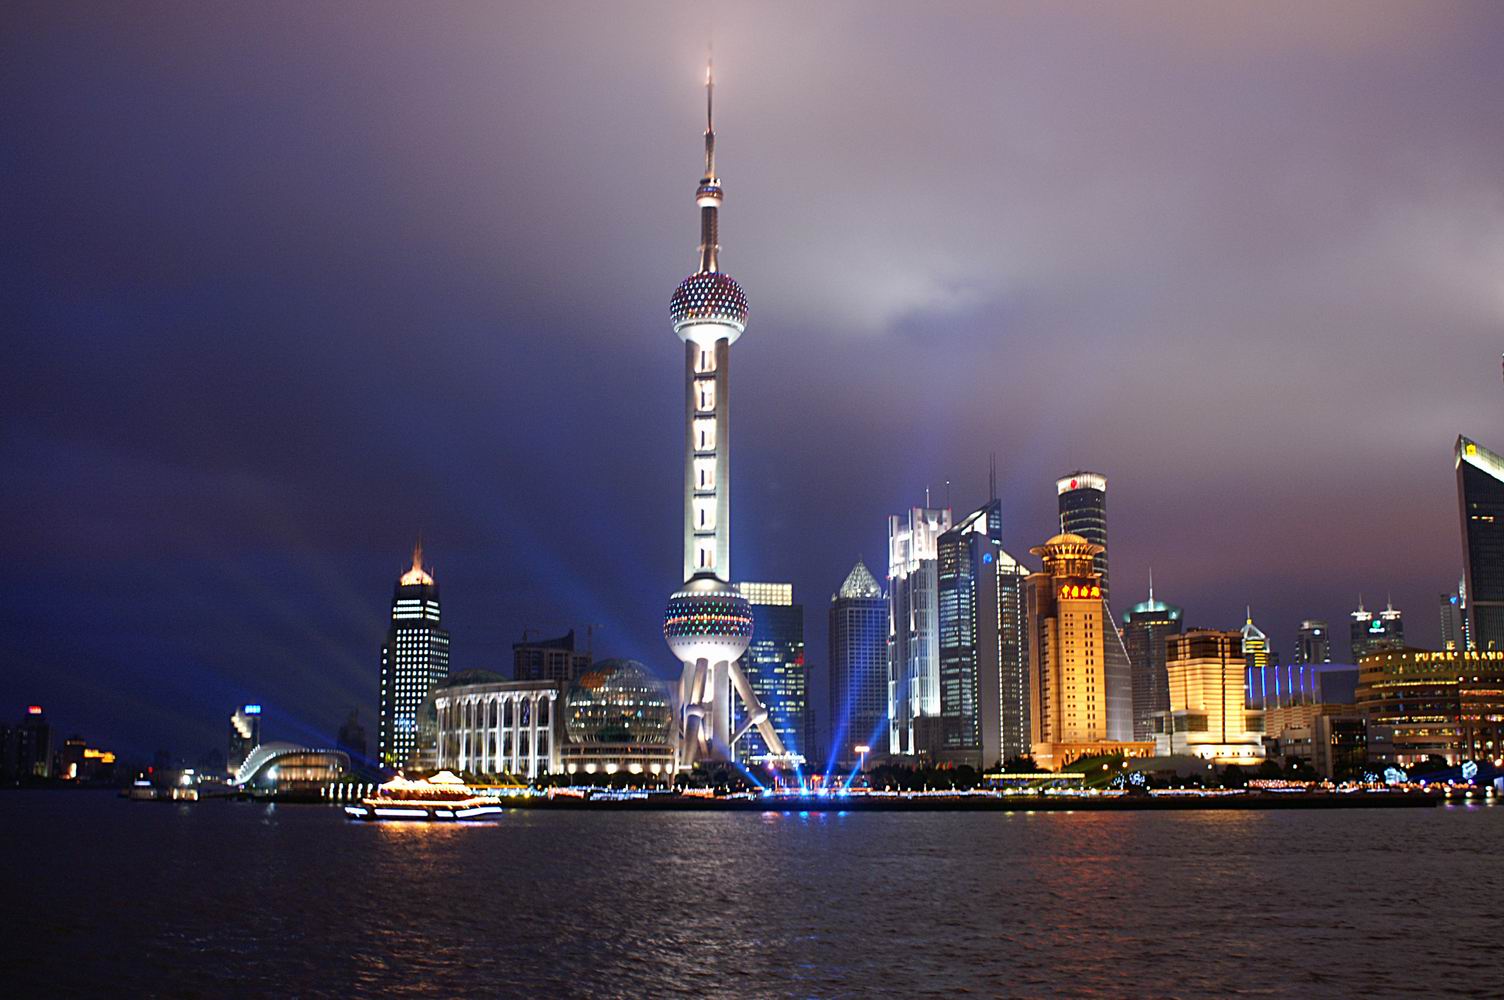 上海照片夜景无水印图片